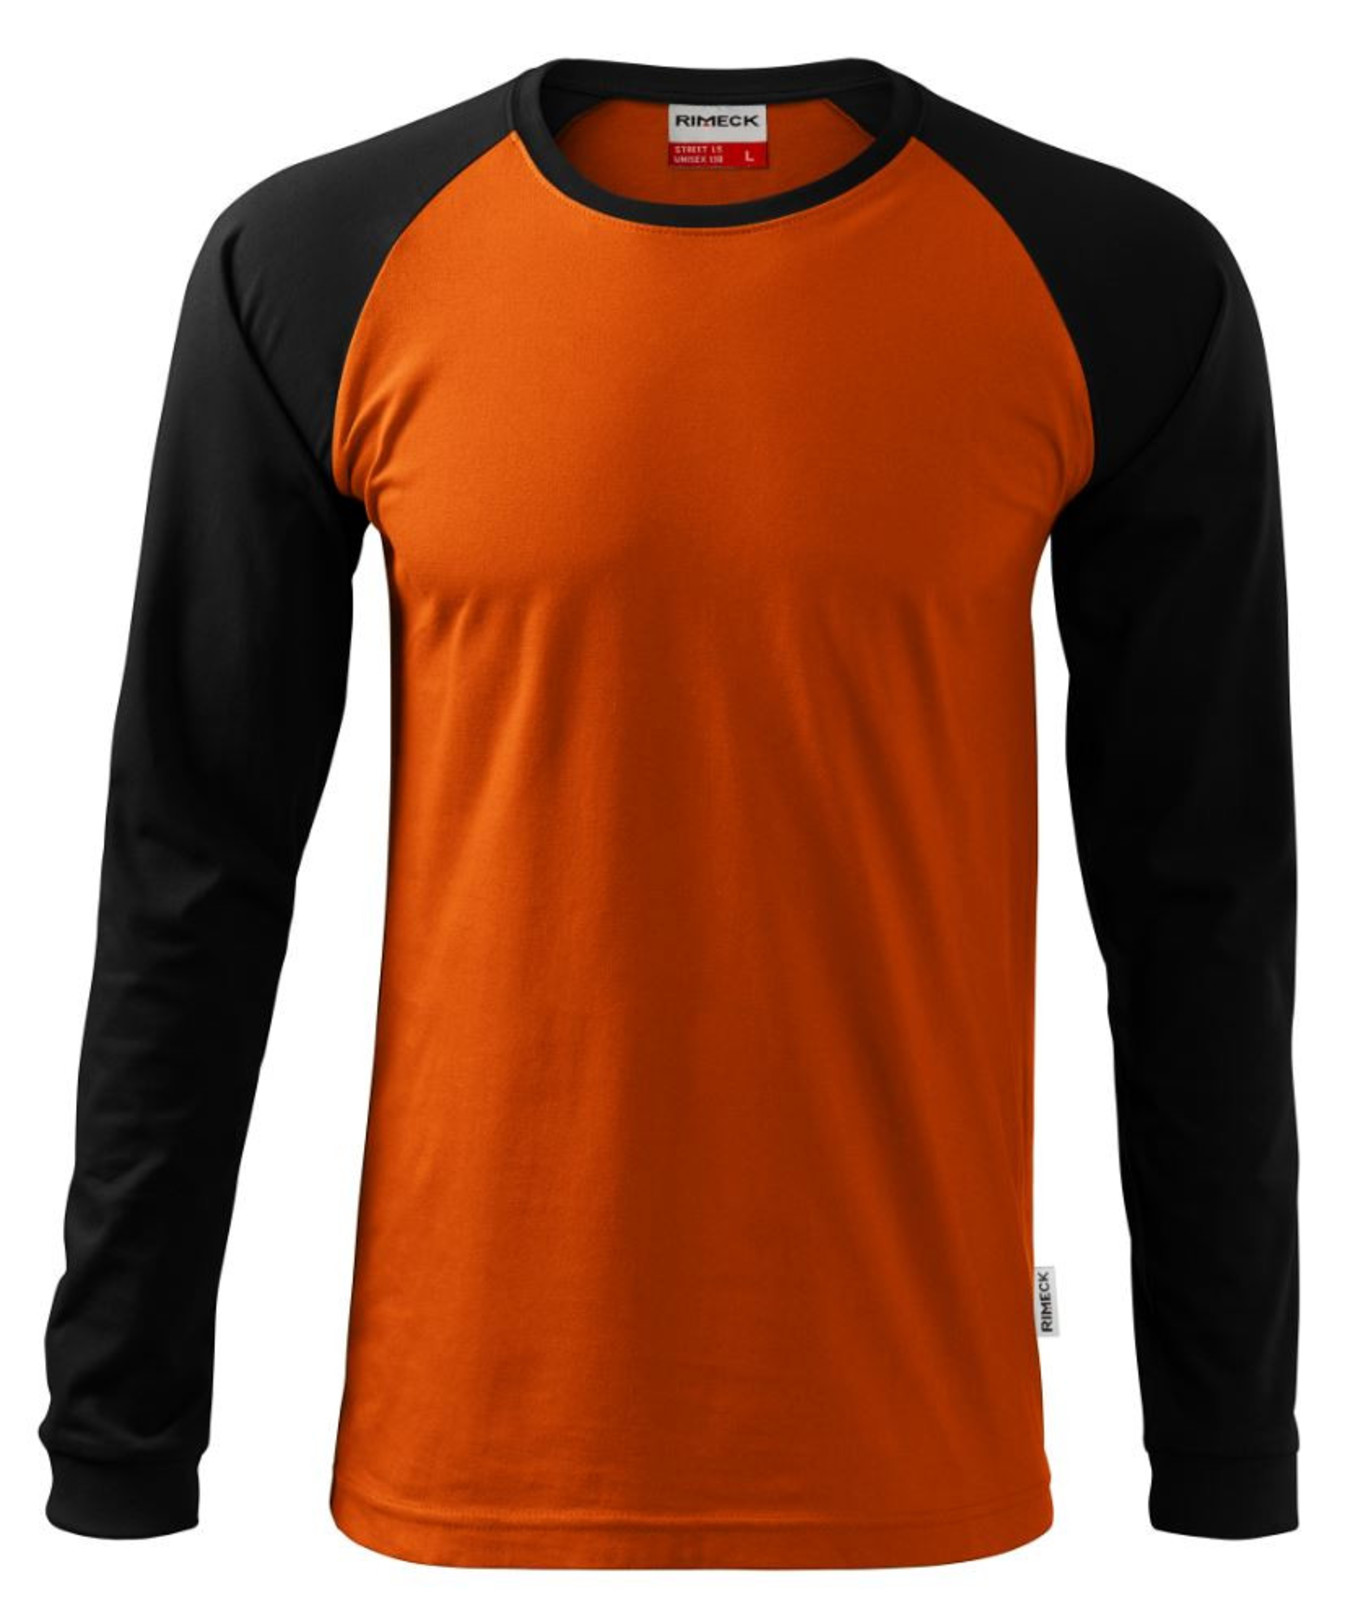 Unisex tričko s dlhým rukávom Rimeck Street LS 130 - veľkosť: S, farba: červená/sivá